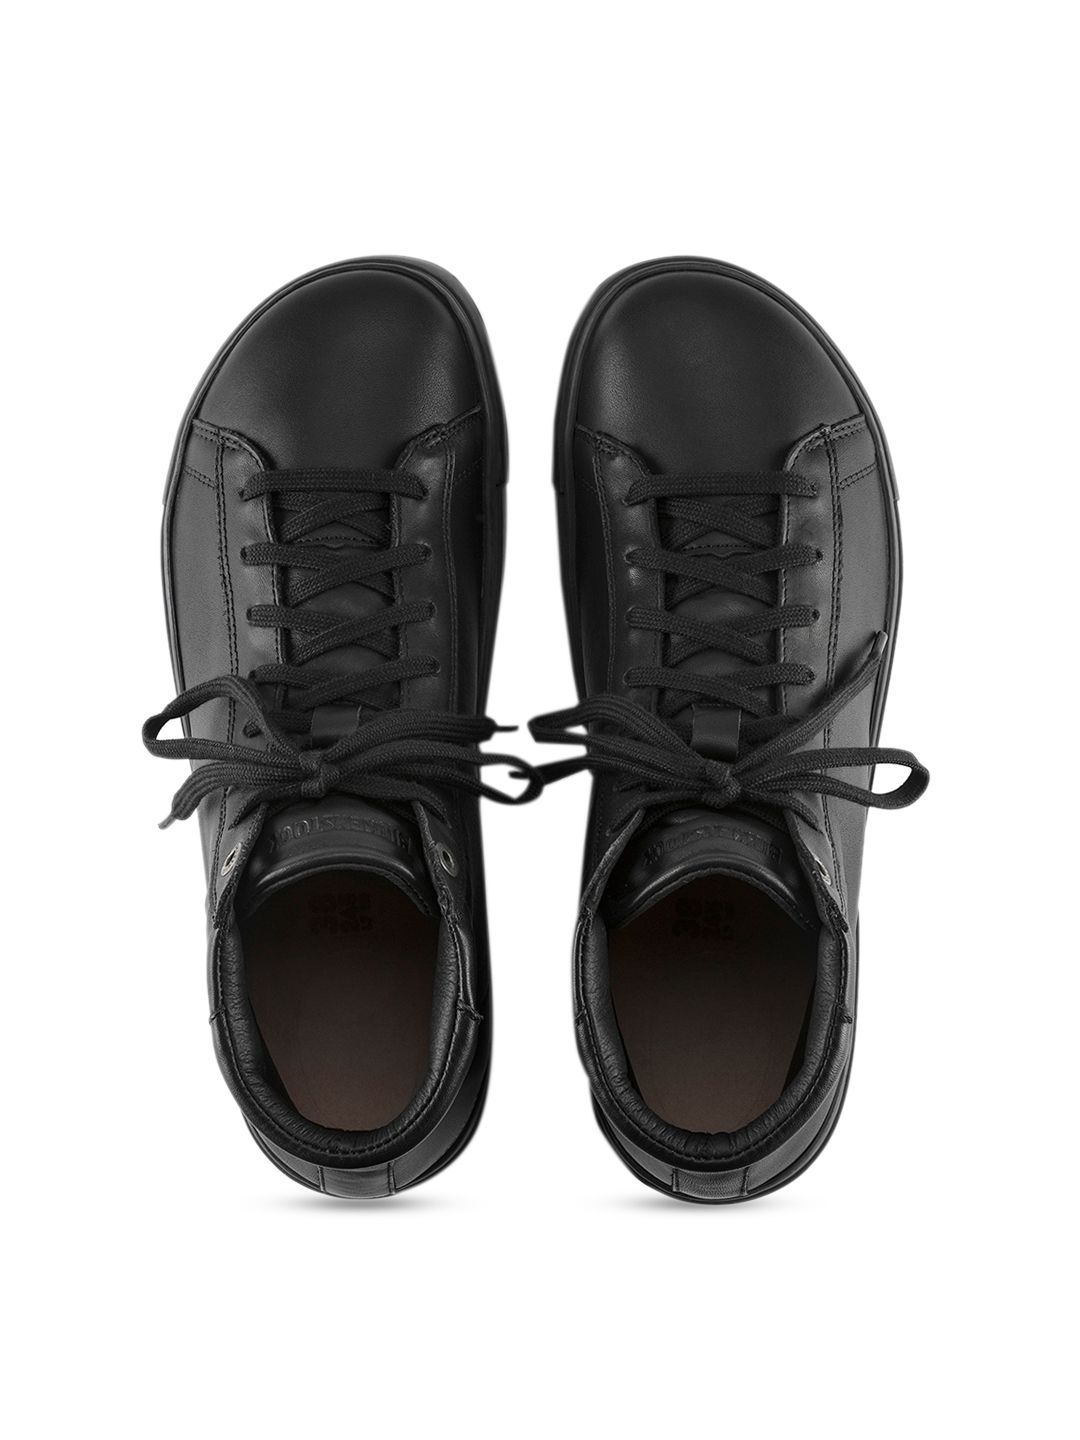 Birkenstock Unisex Black Regular Width Bend Leather Sneakers Price in India